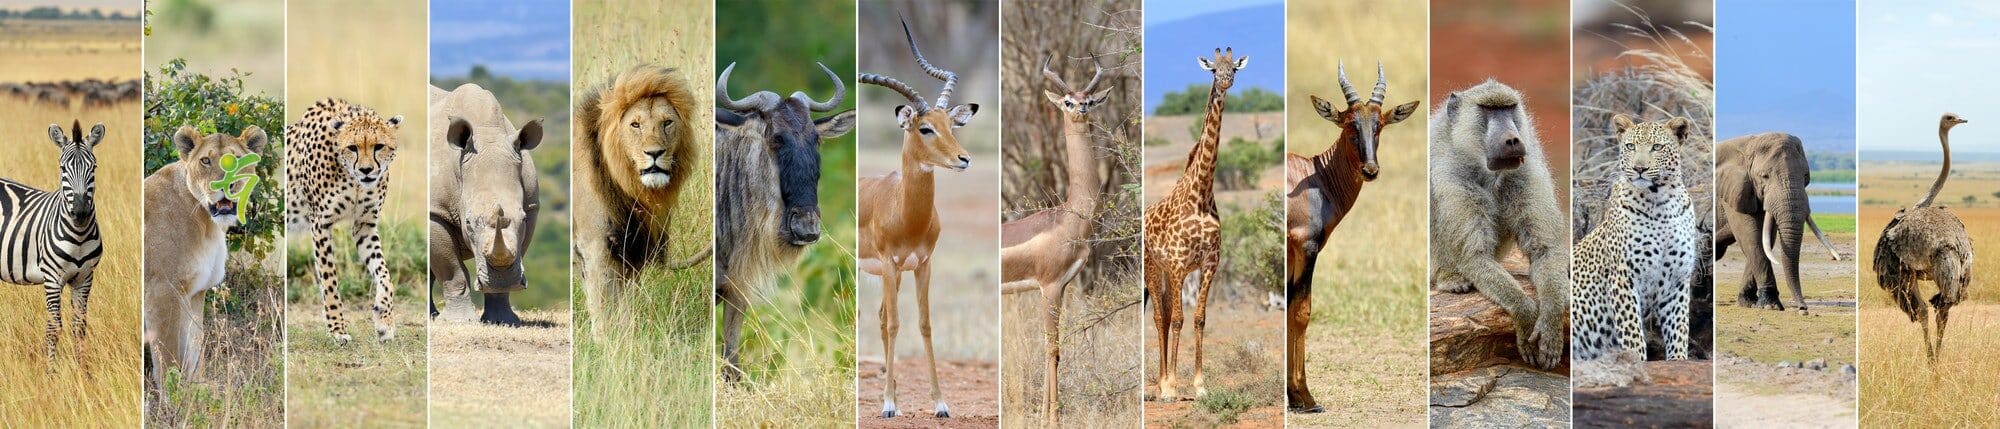 Collage von 14 afrikanischen Wildtieren